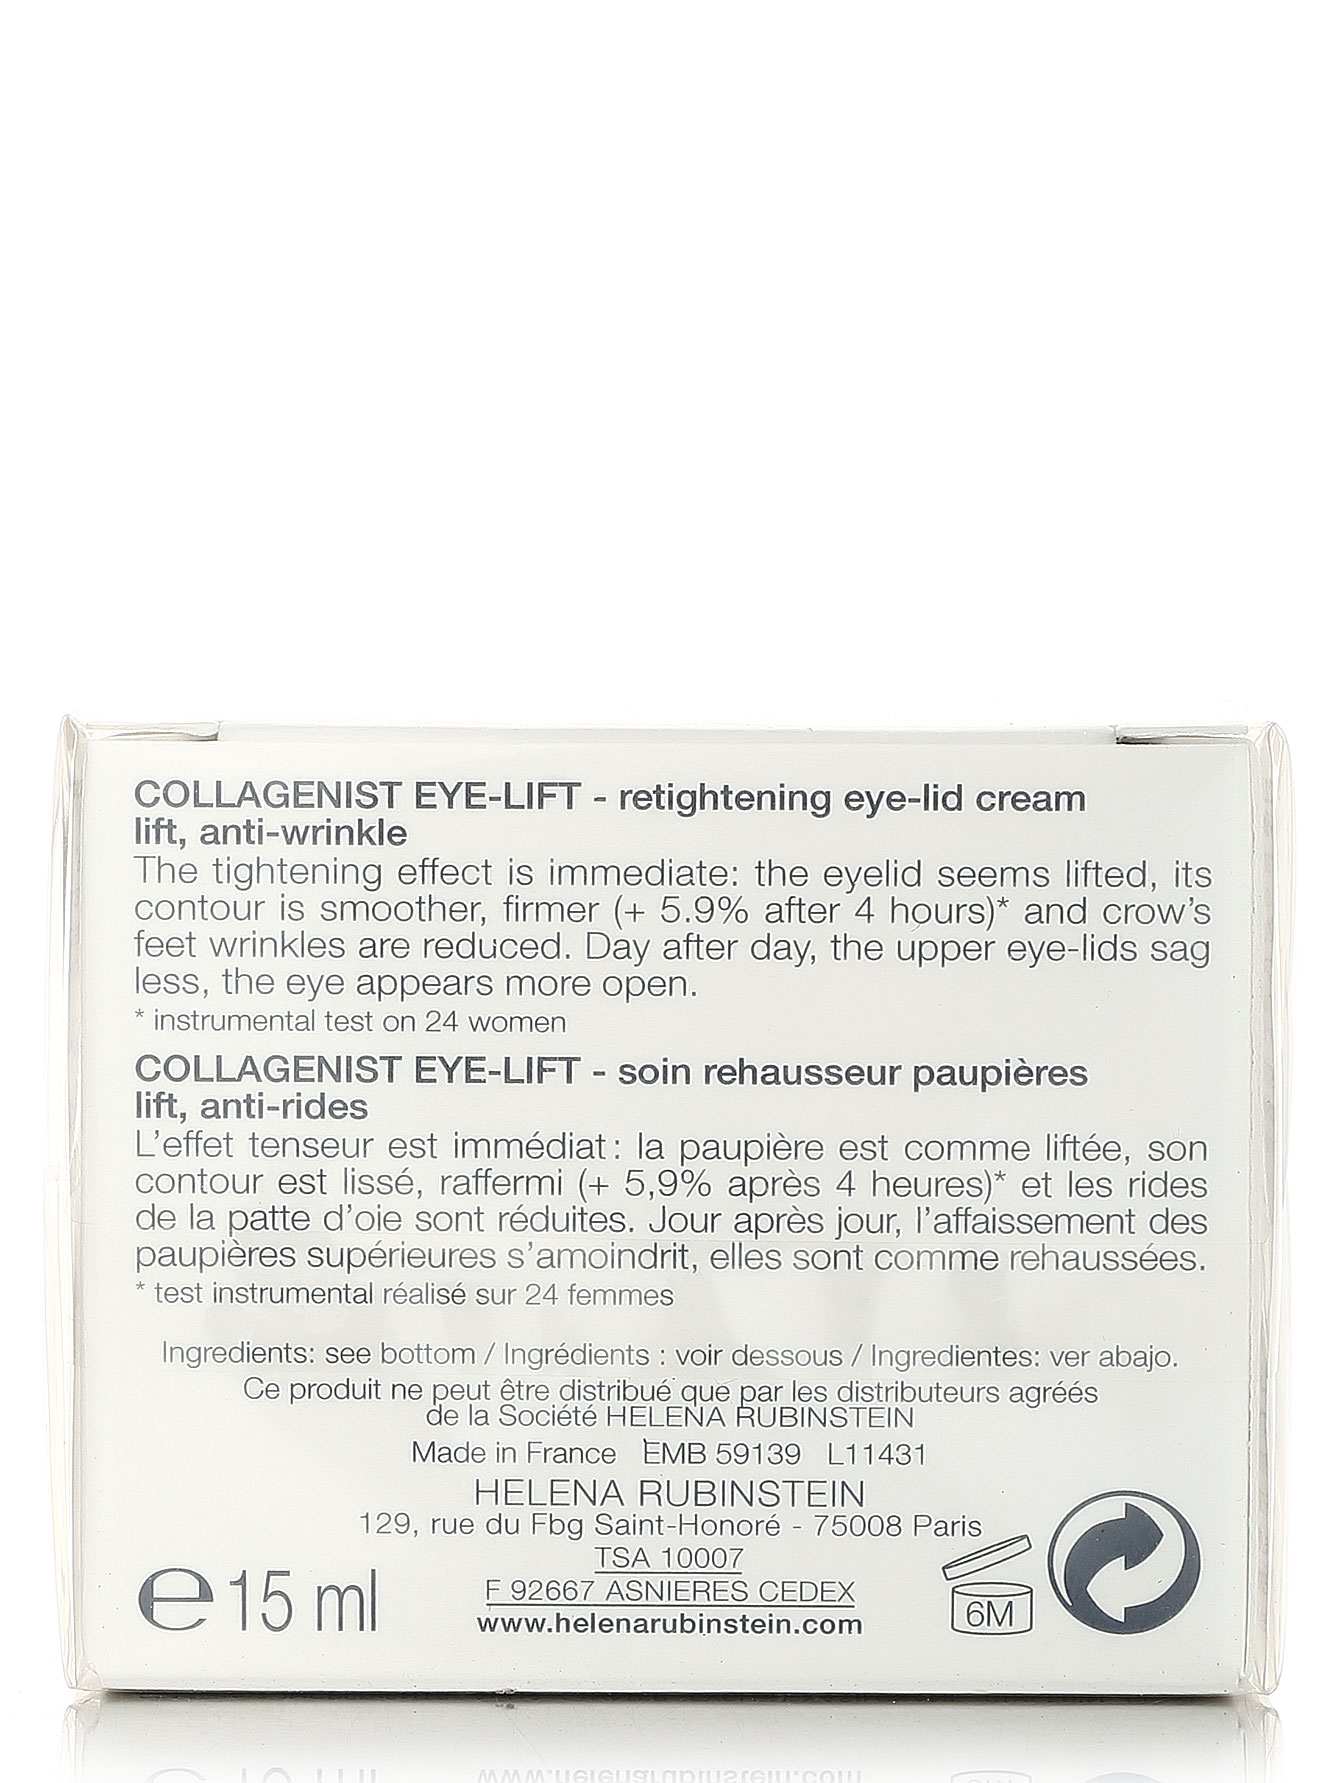  Крем для глаз - Collagenist V-Lift, 15ml - Модель Верх-Низ